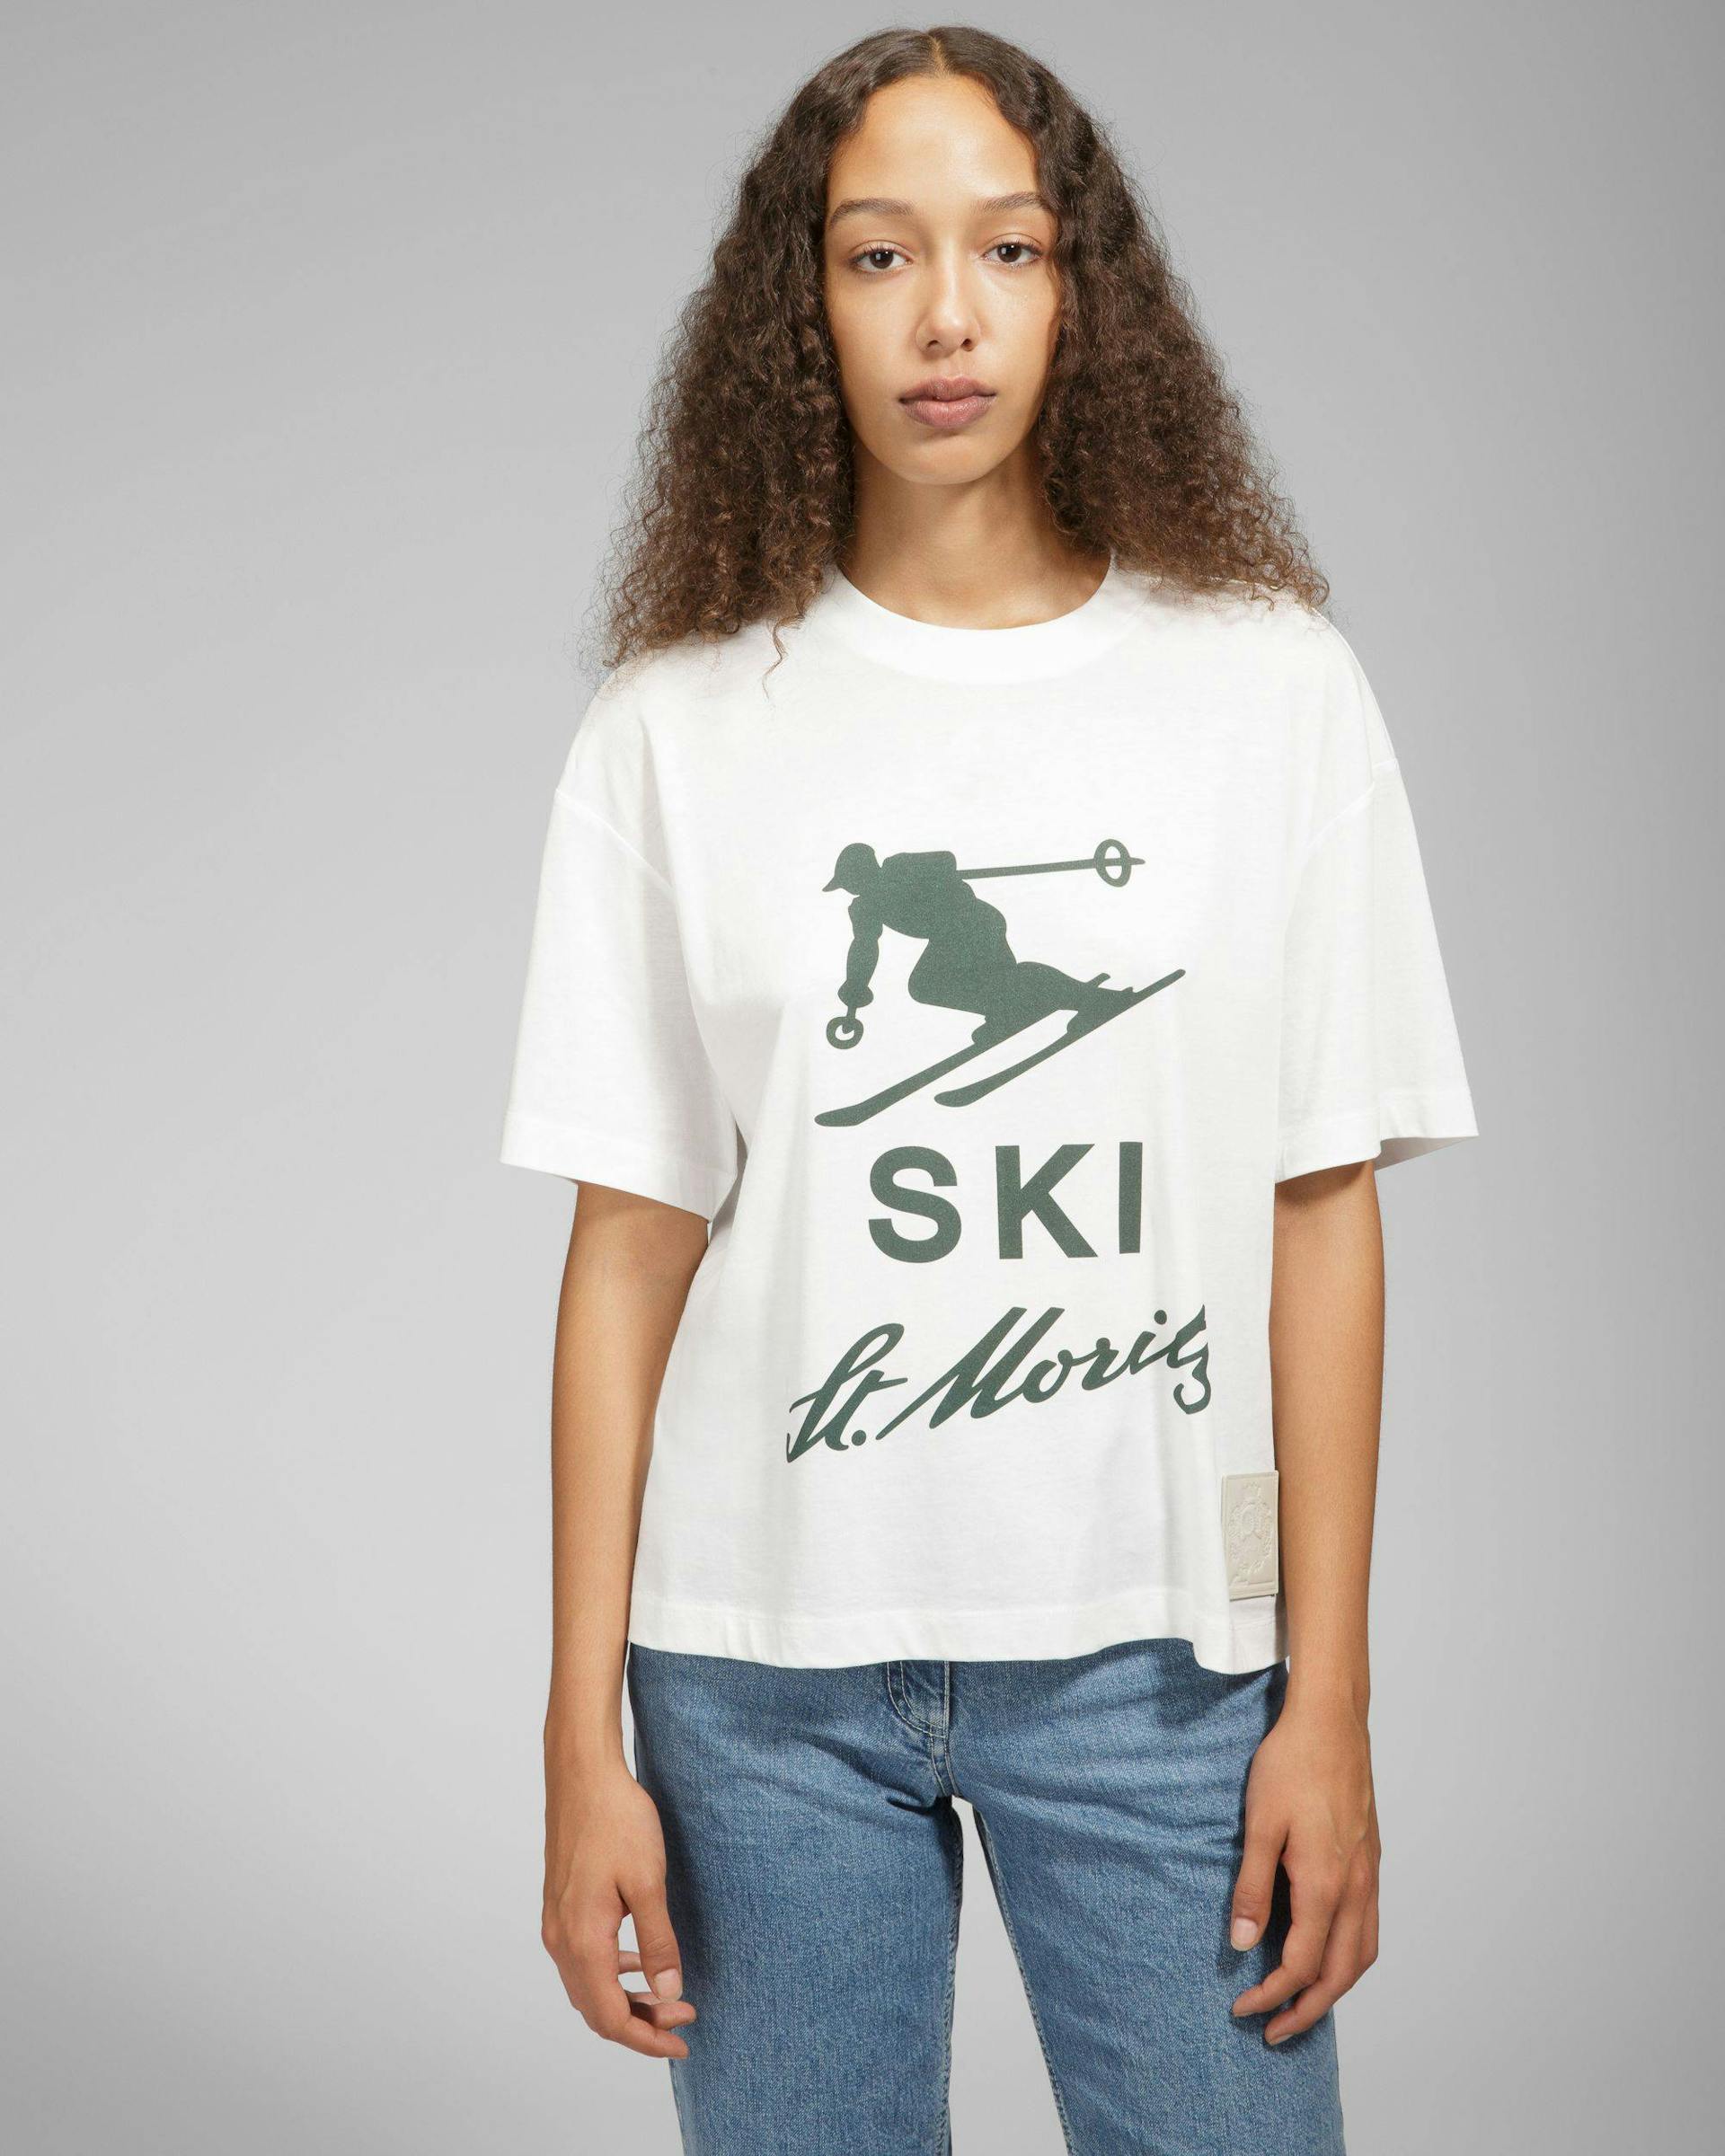 T-shirt Ski St Moritz - Homme - Bally - 02